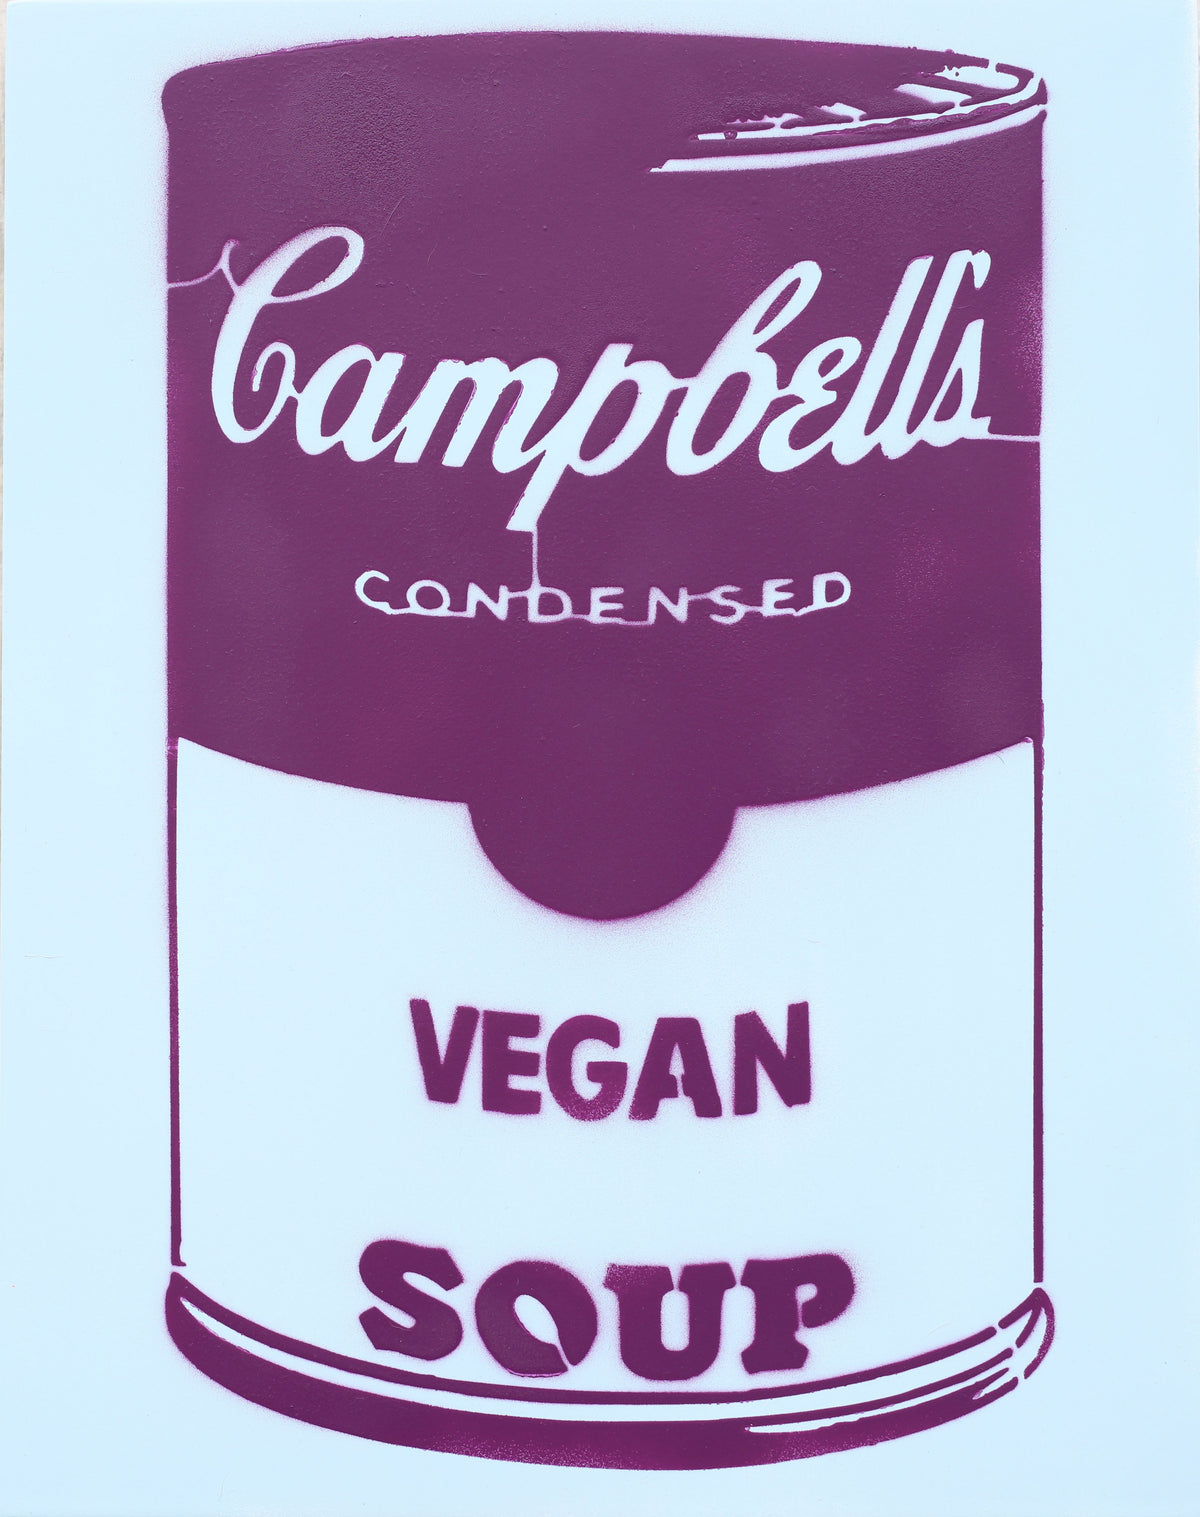 14x11  Original Artwork Vegan Campbell's Soup a la Warhol by Le Fou (purple and light blue)